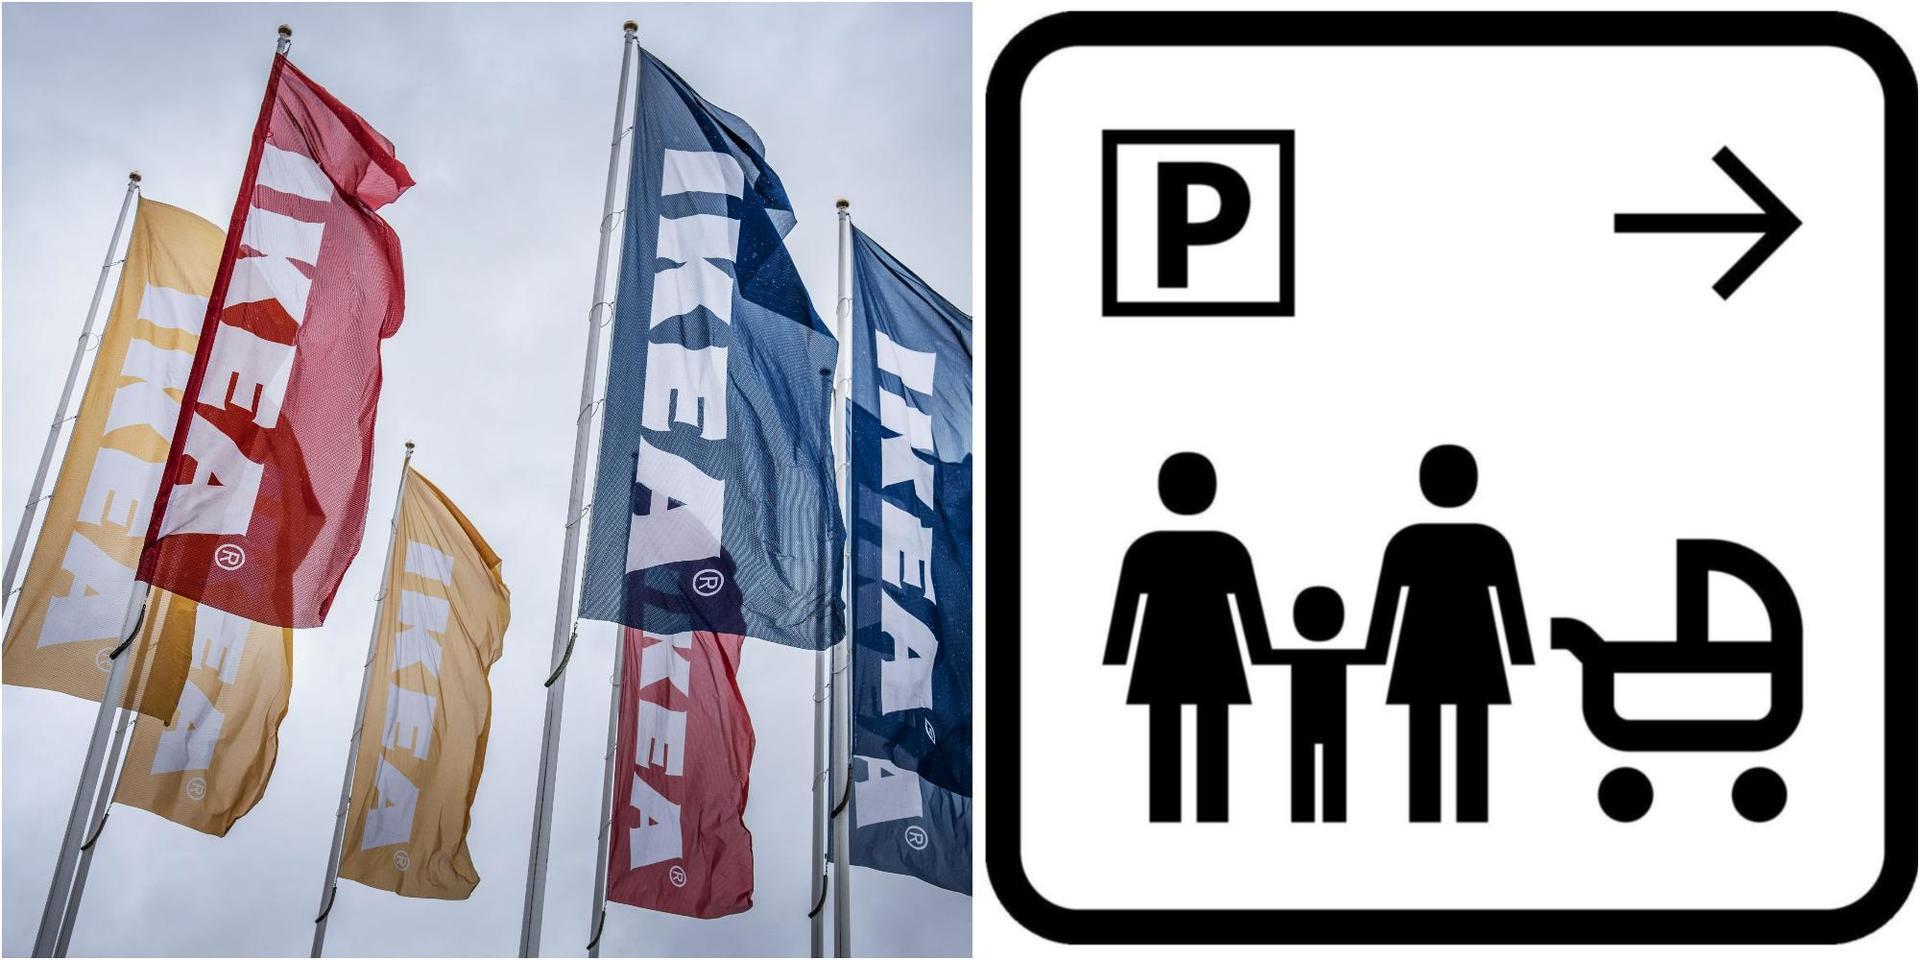 Ikea i Australien har infört skyltar med samkönade föräldrar på varuhusens parkeringsplatser.